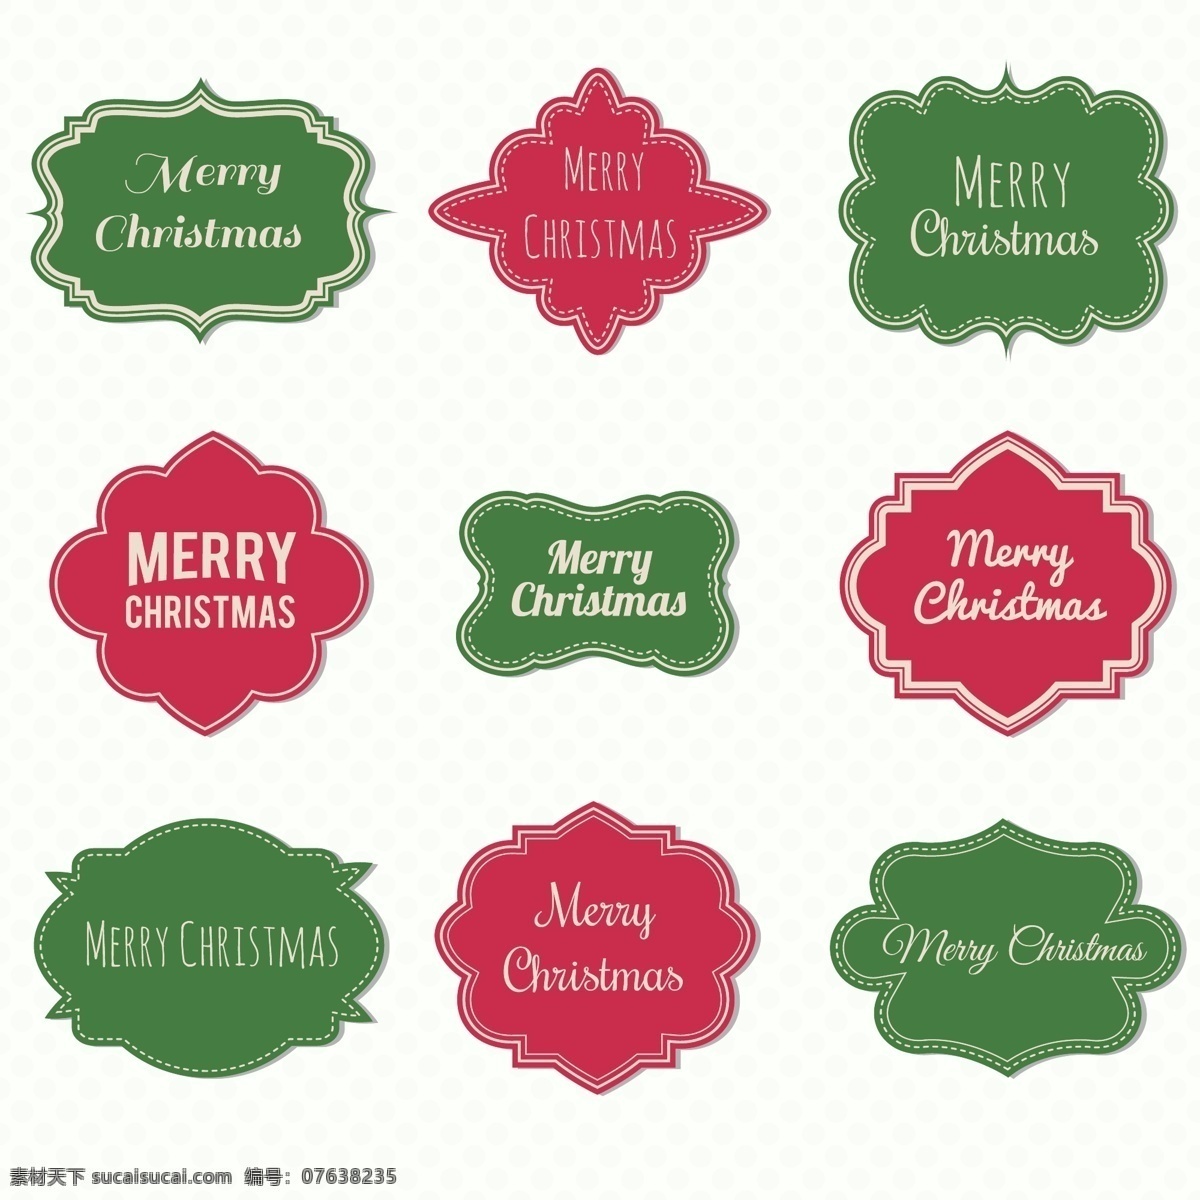 圣诞节 标签 设置 圣诞节背景图 ai素材 圣诞节素材 红色 标志 绿色 圣诞节快乐 喜庆